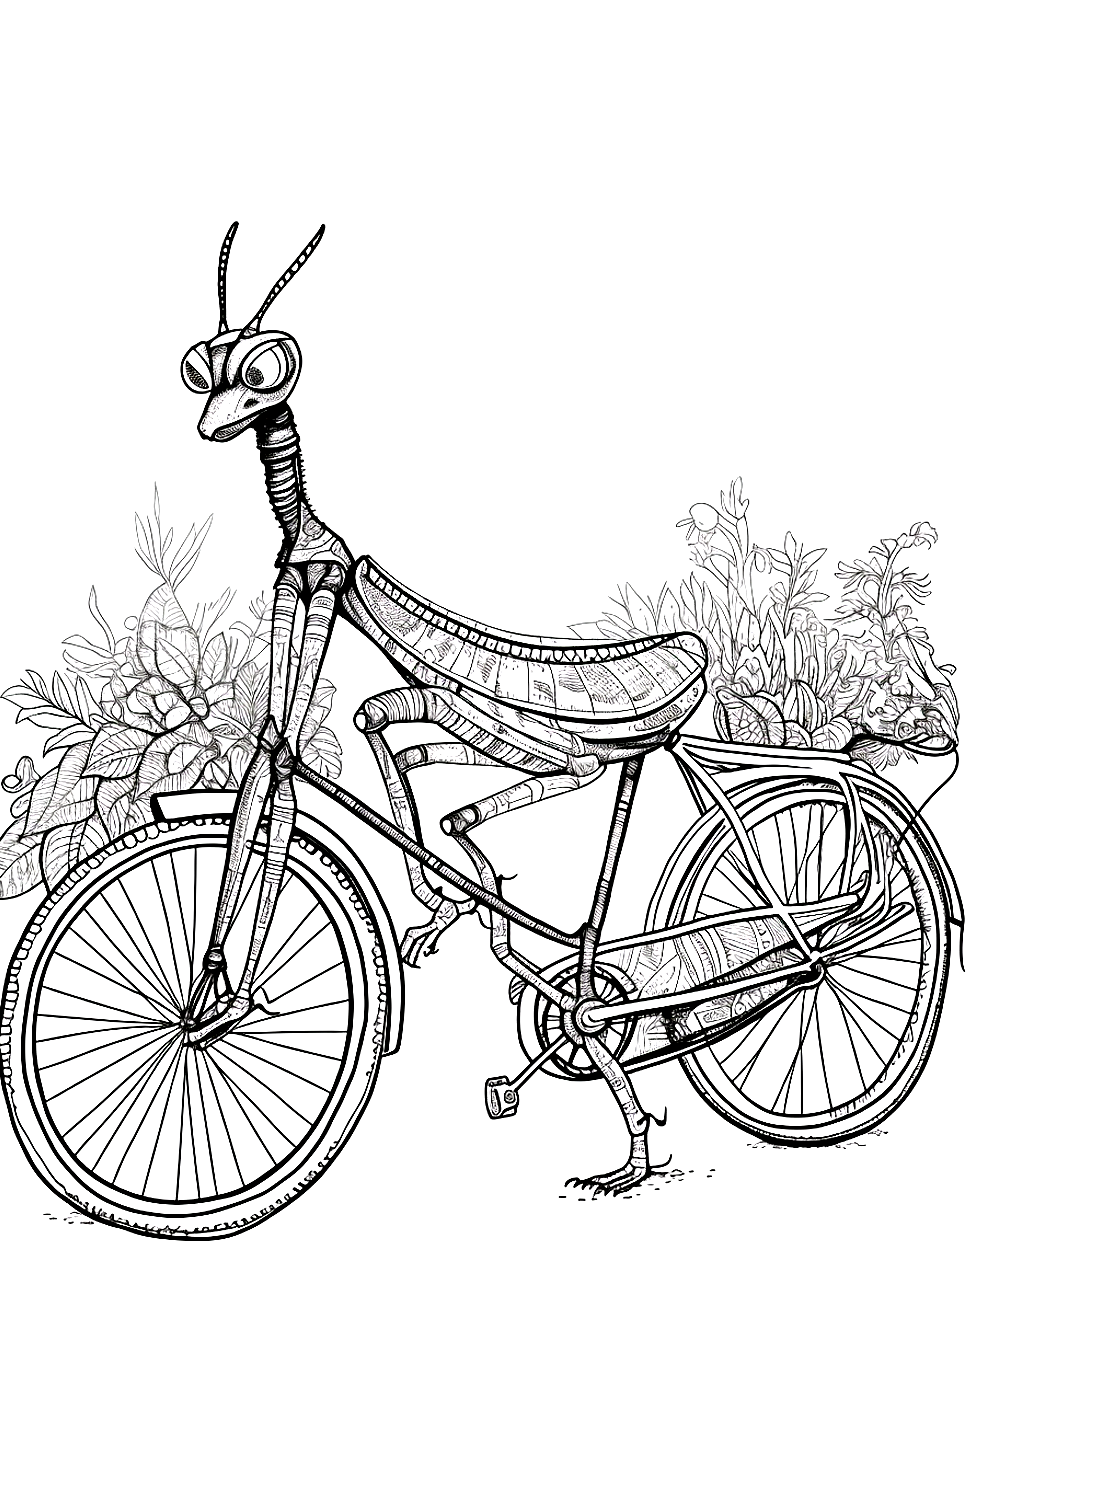 Богомол и велосипед из богомола